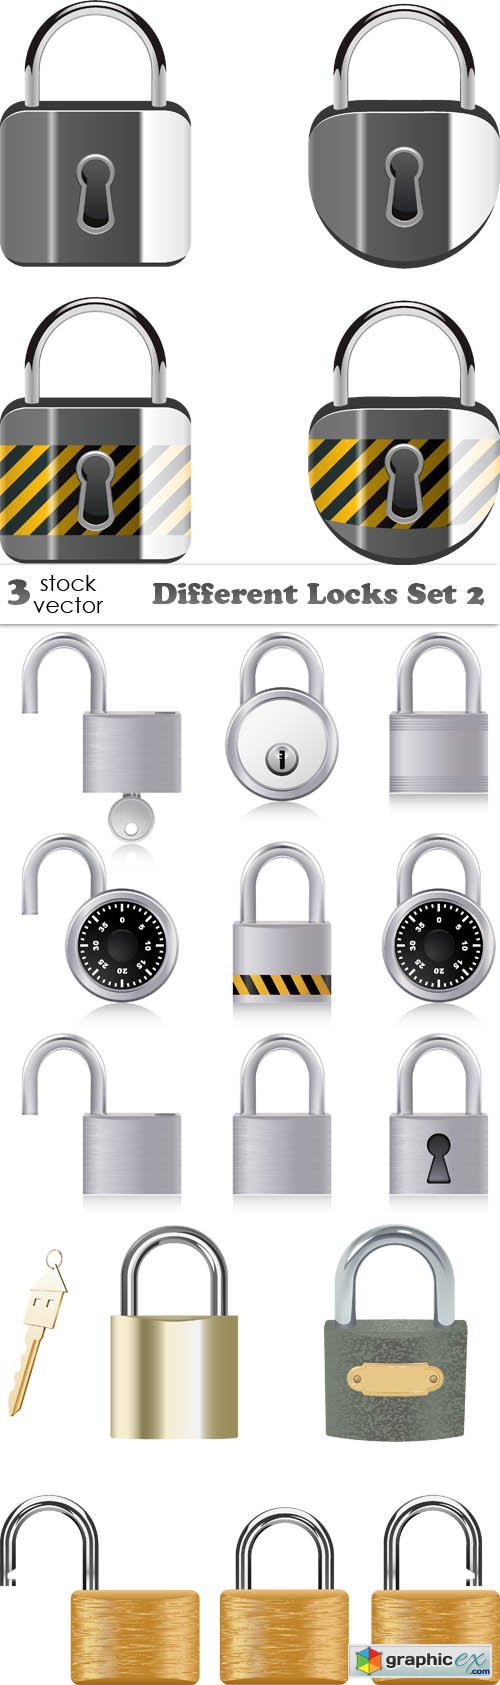 Vectors - Different Locks Set 2